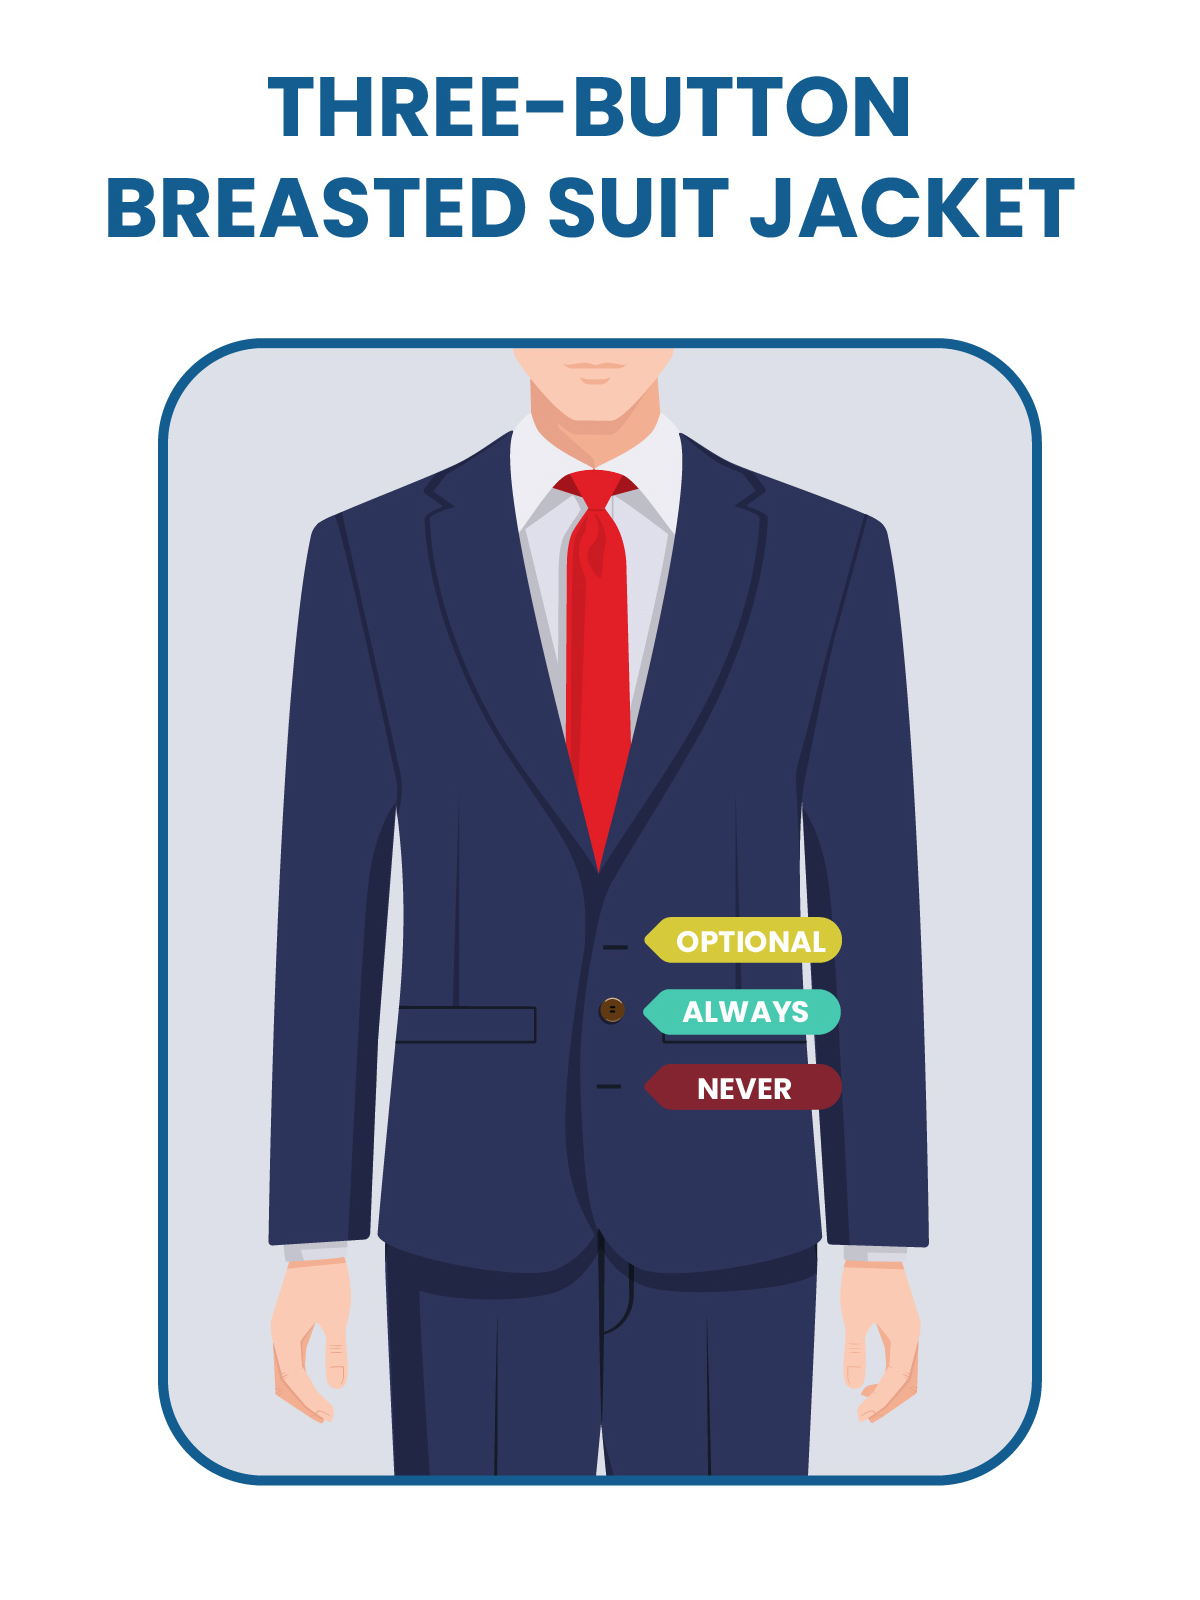 Details 134+ 3 button suit jacket best - jtcvietnam.edu.vn